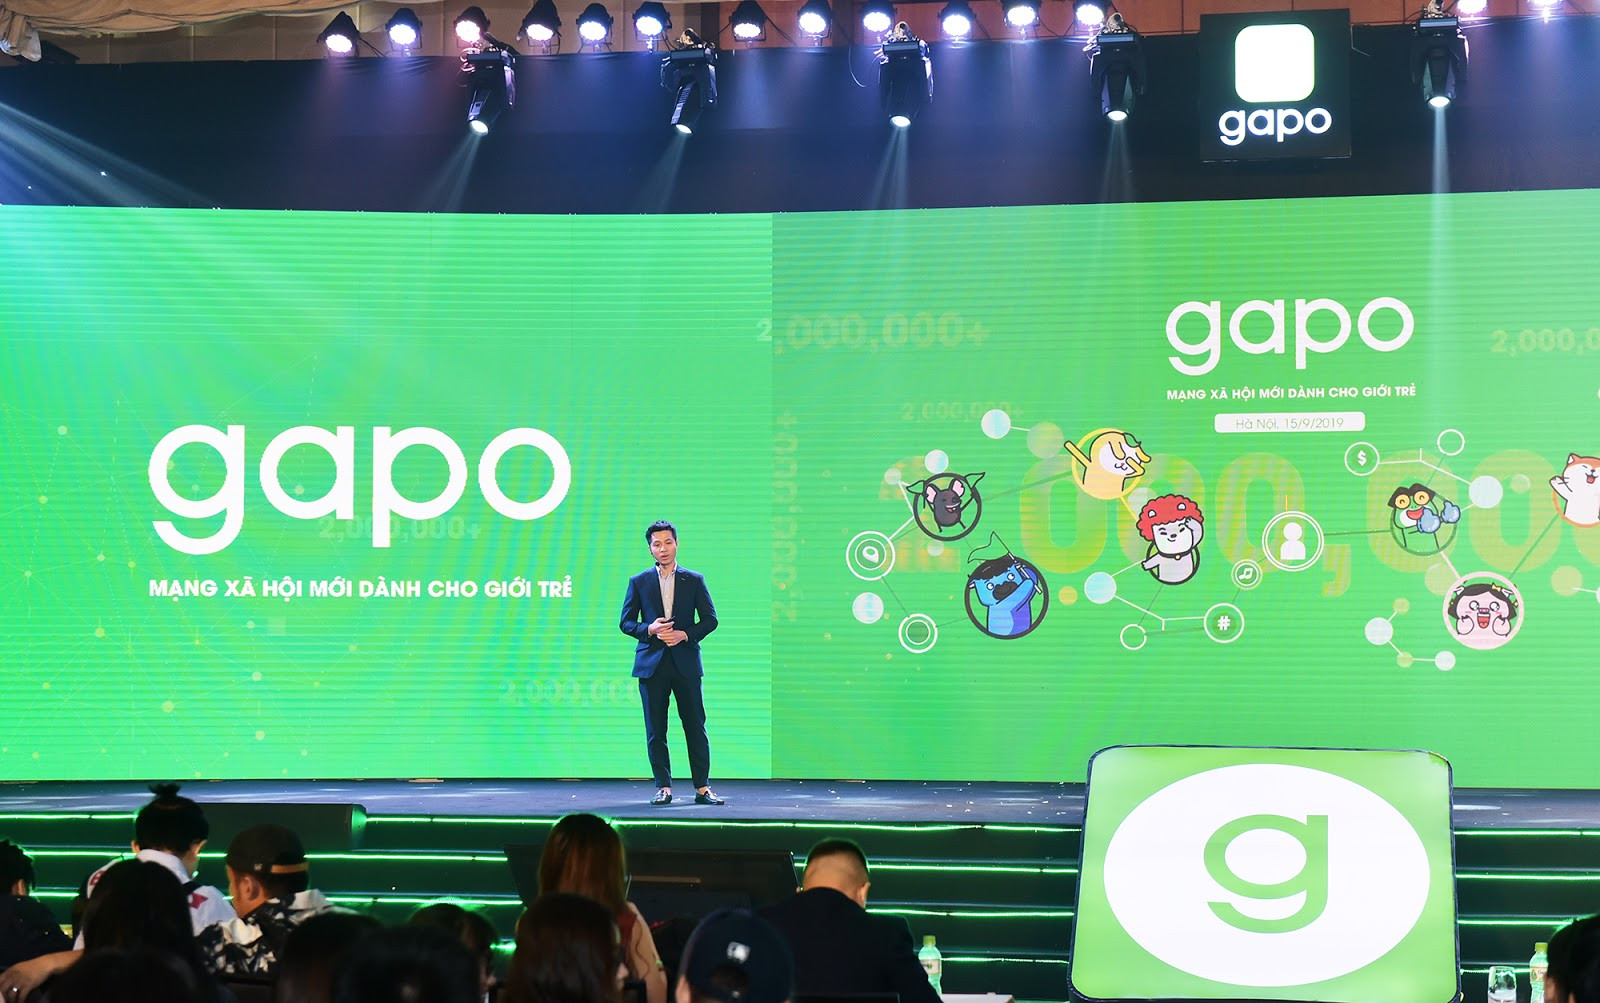 Để bảo vệ thông tin người dùng, Gapo đã định danh được 40% tài khoản - Ảnh 1.